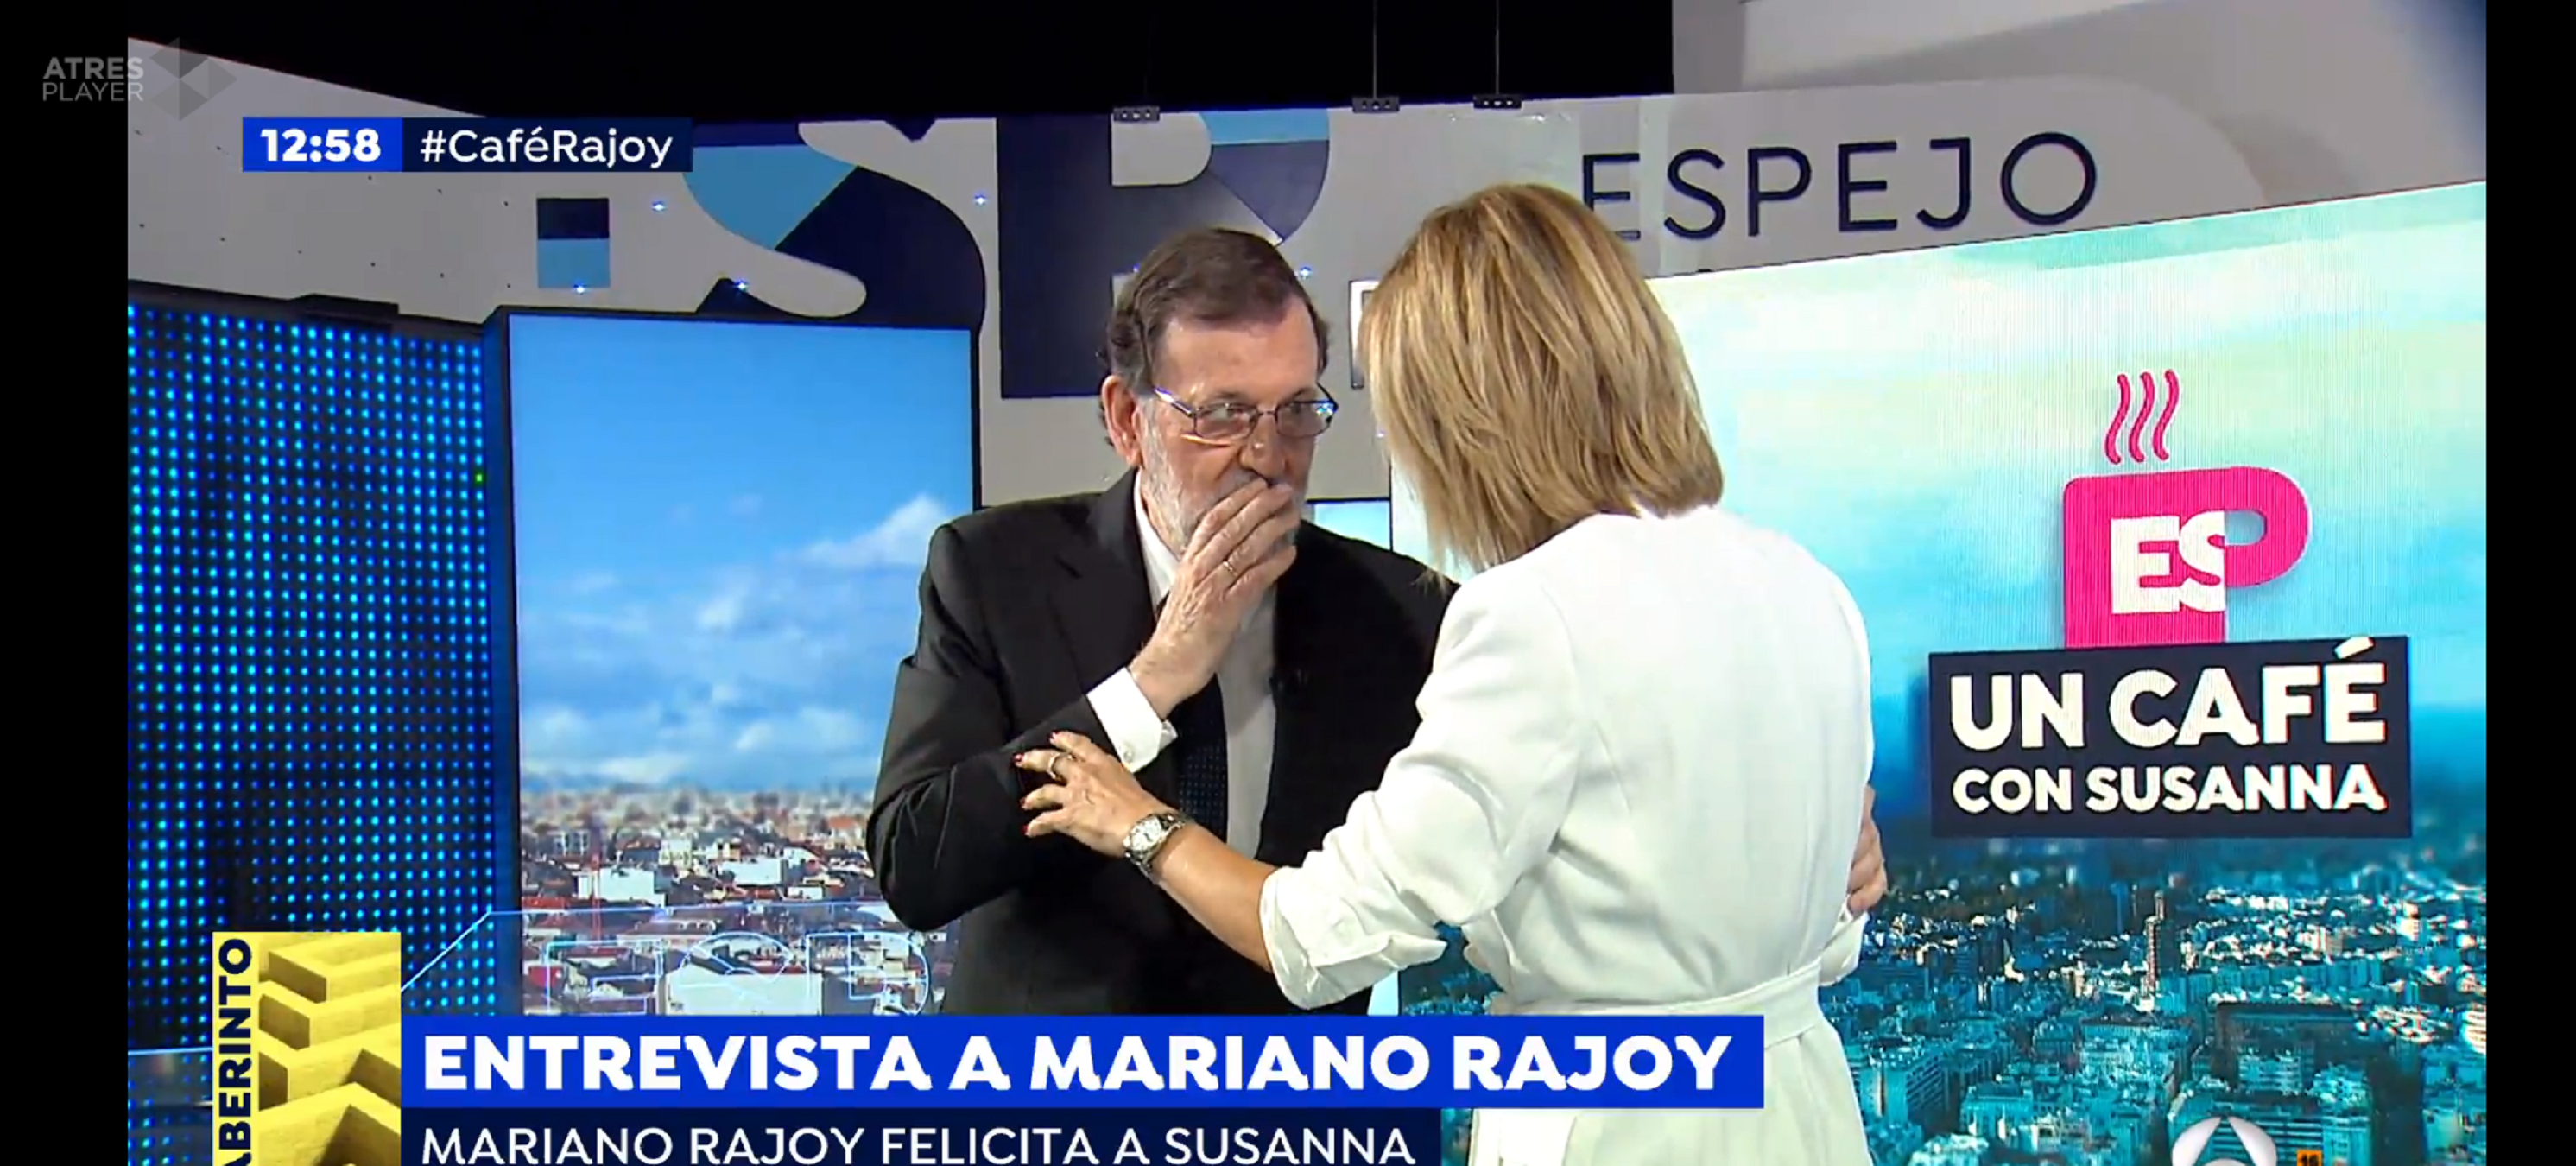 Qué le ha dicho Rajoy a Susanna Griso creyendo que el micro estaba cerrado